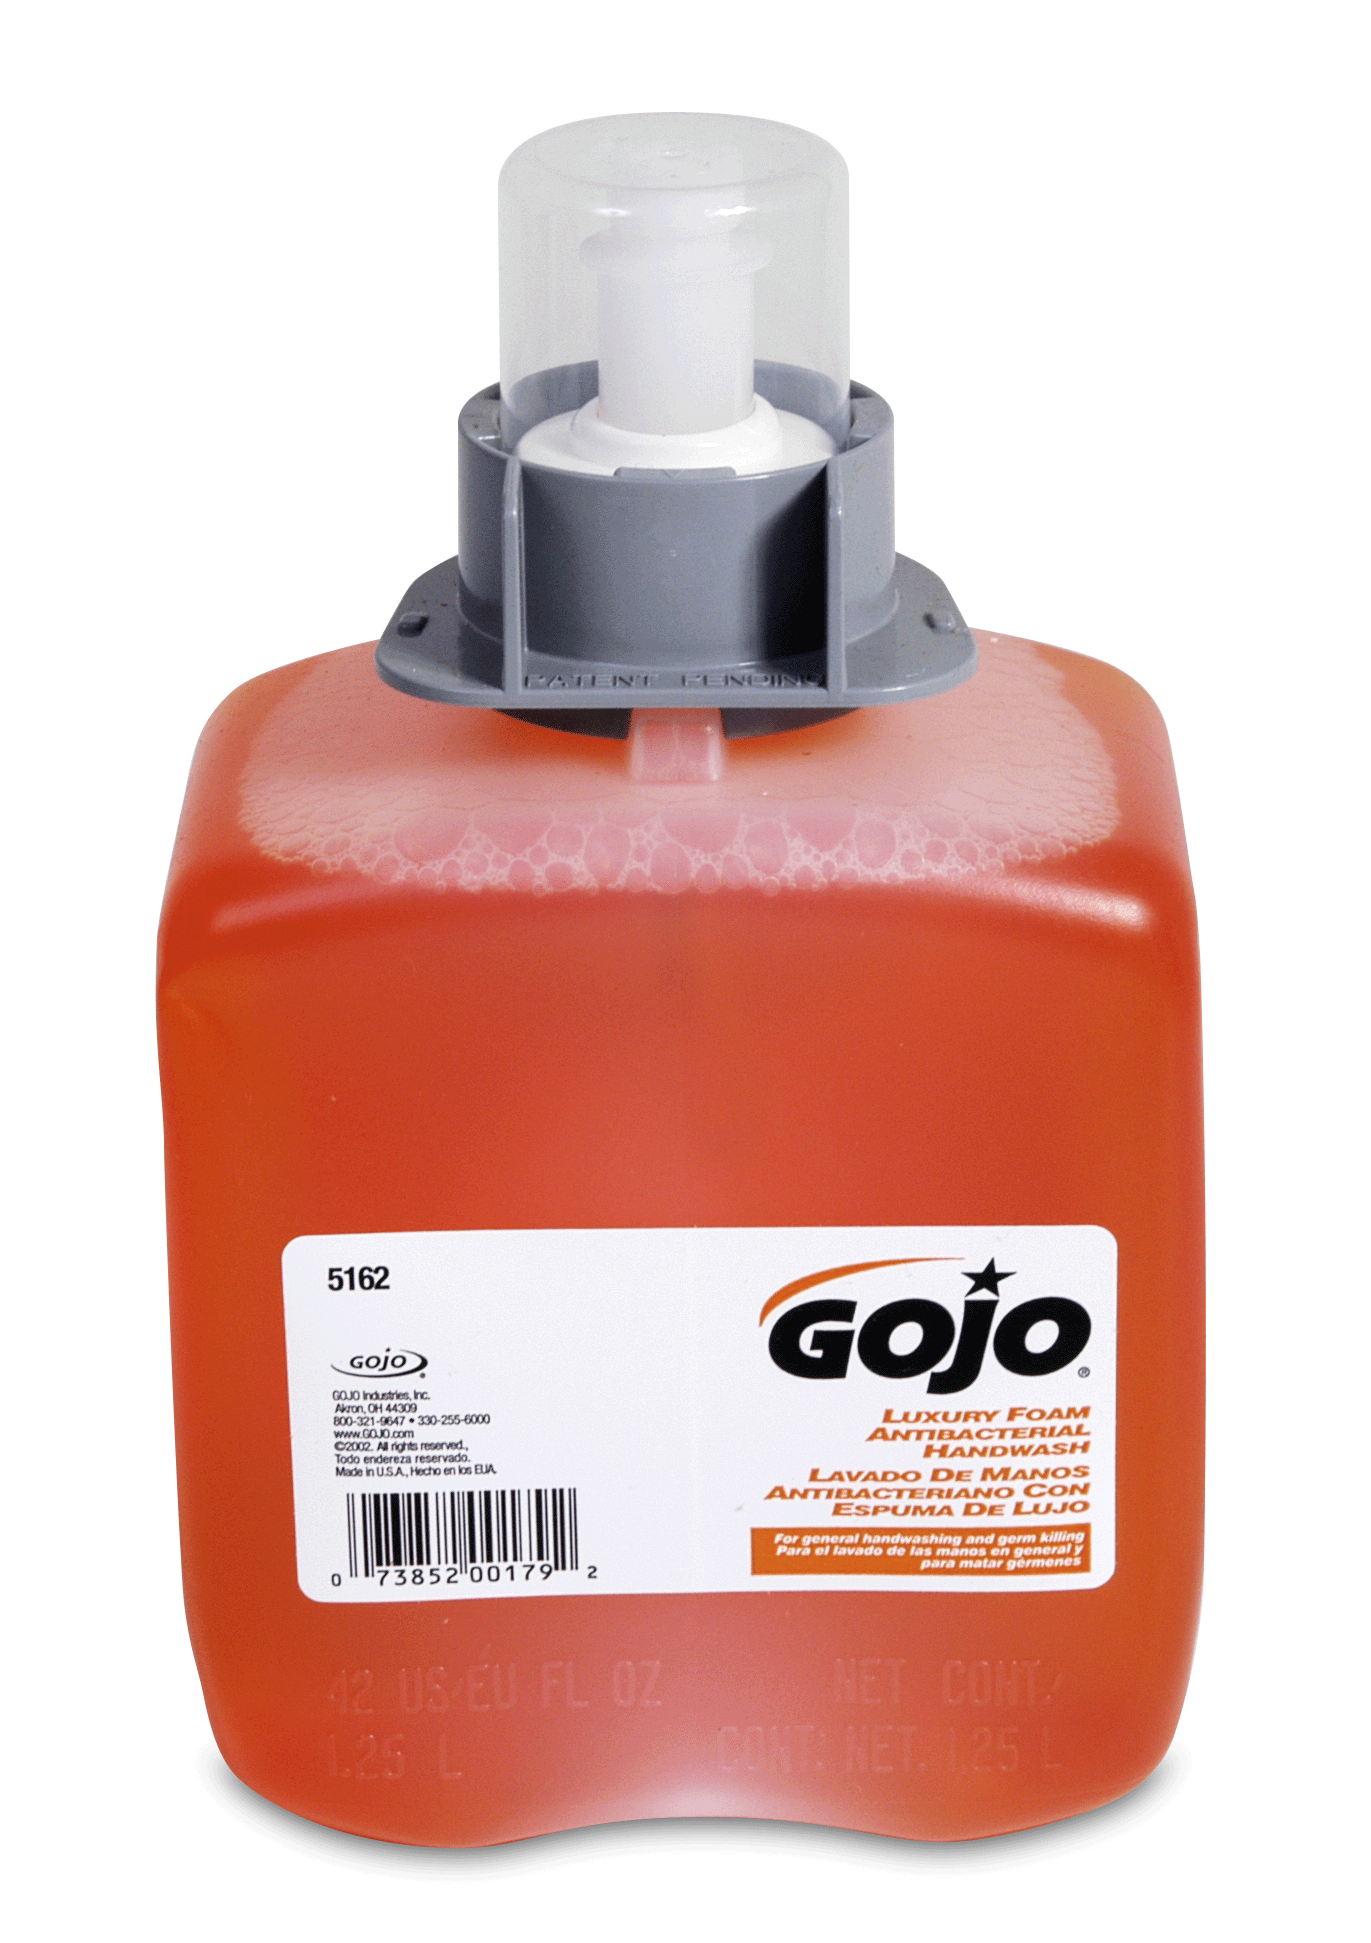 HAND SOAP FMX GOJO FOAMING ANTIBACTERIAL 1250 ML 4 PER